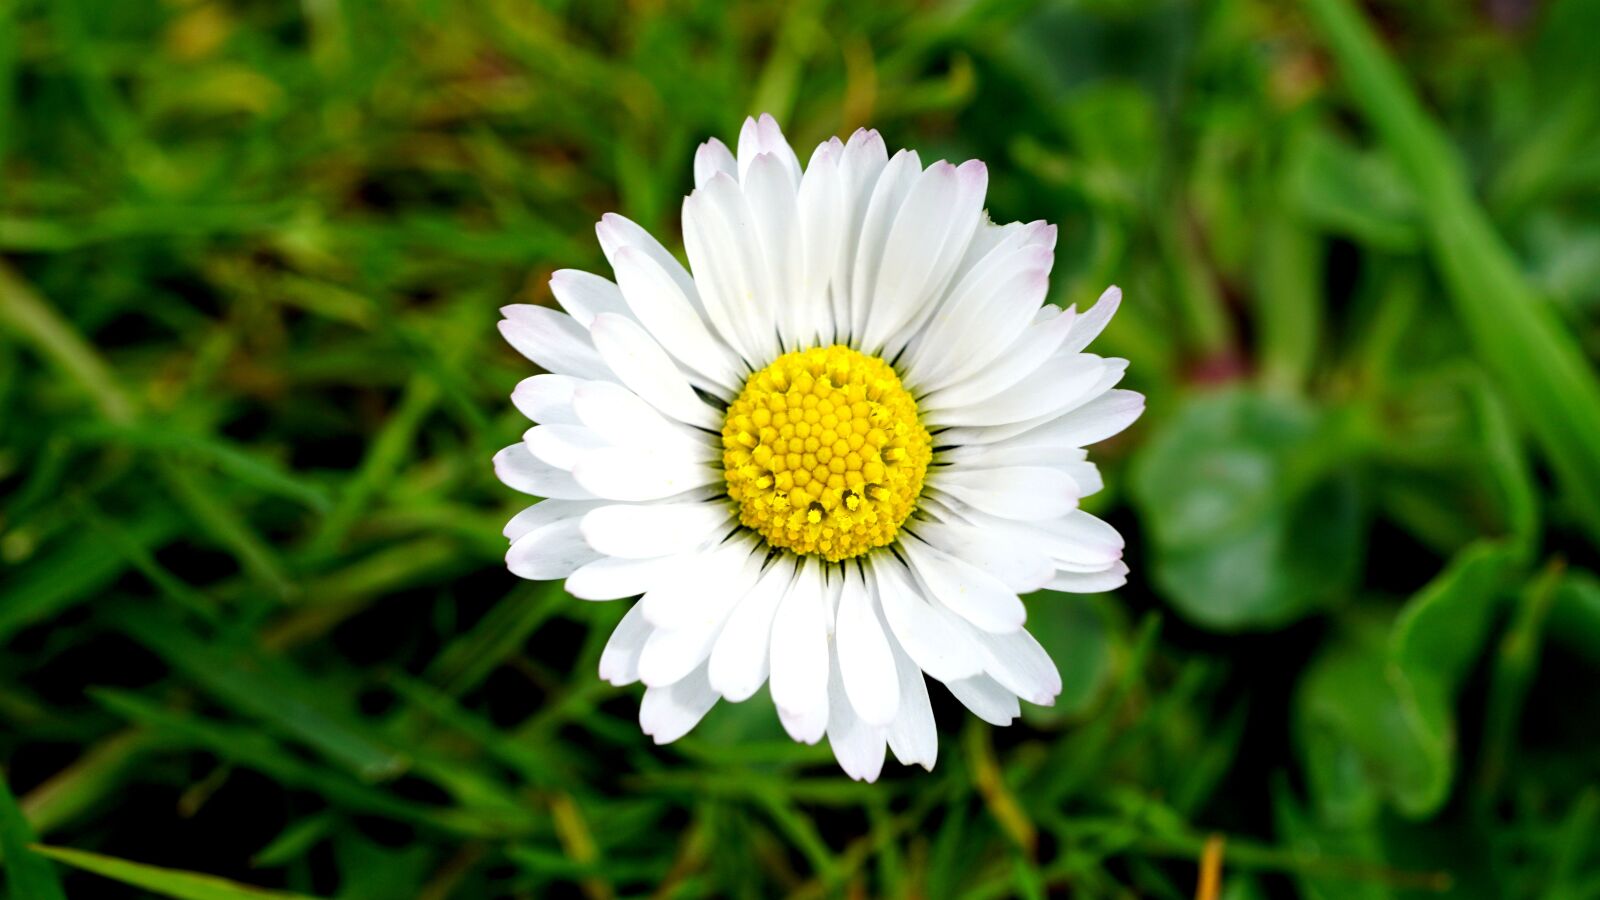 Sony E 30mm F3.5 Macro sample photo. Flower, daisy, nature photography